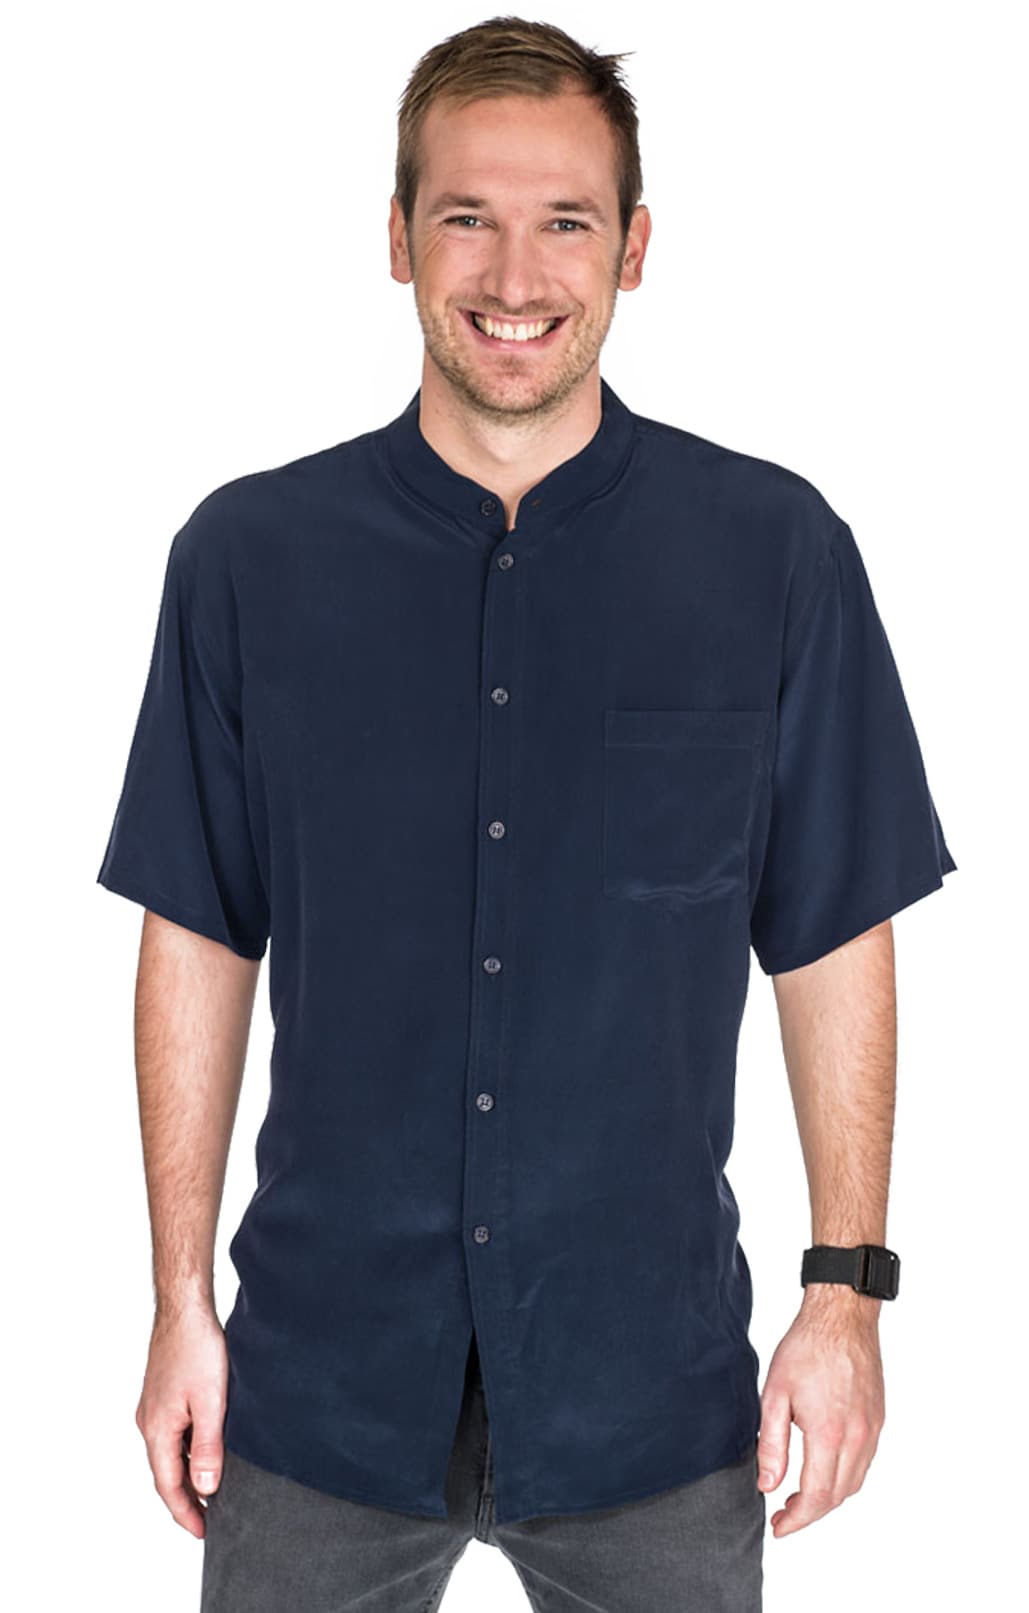 Men's Silk shirt navy blue